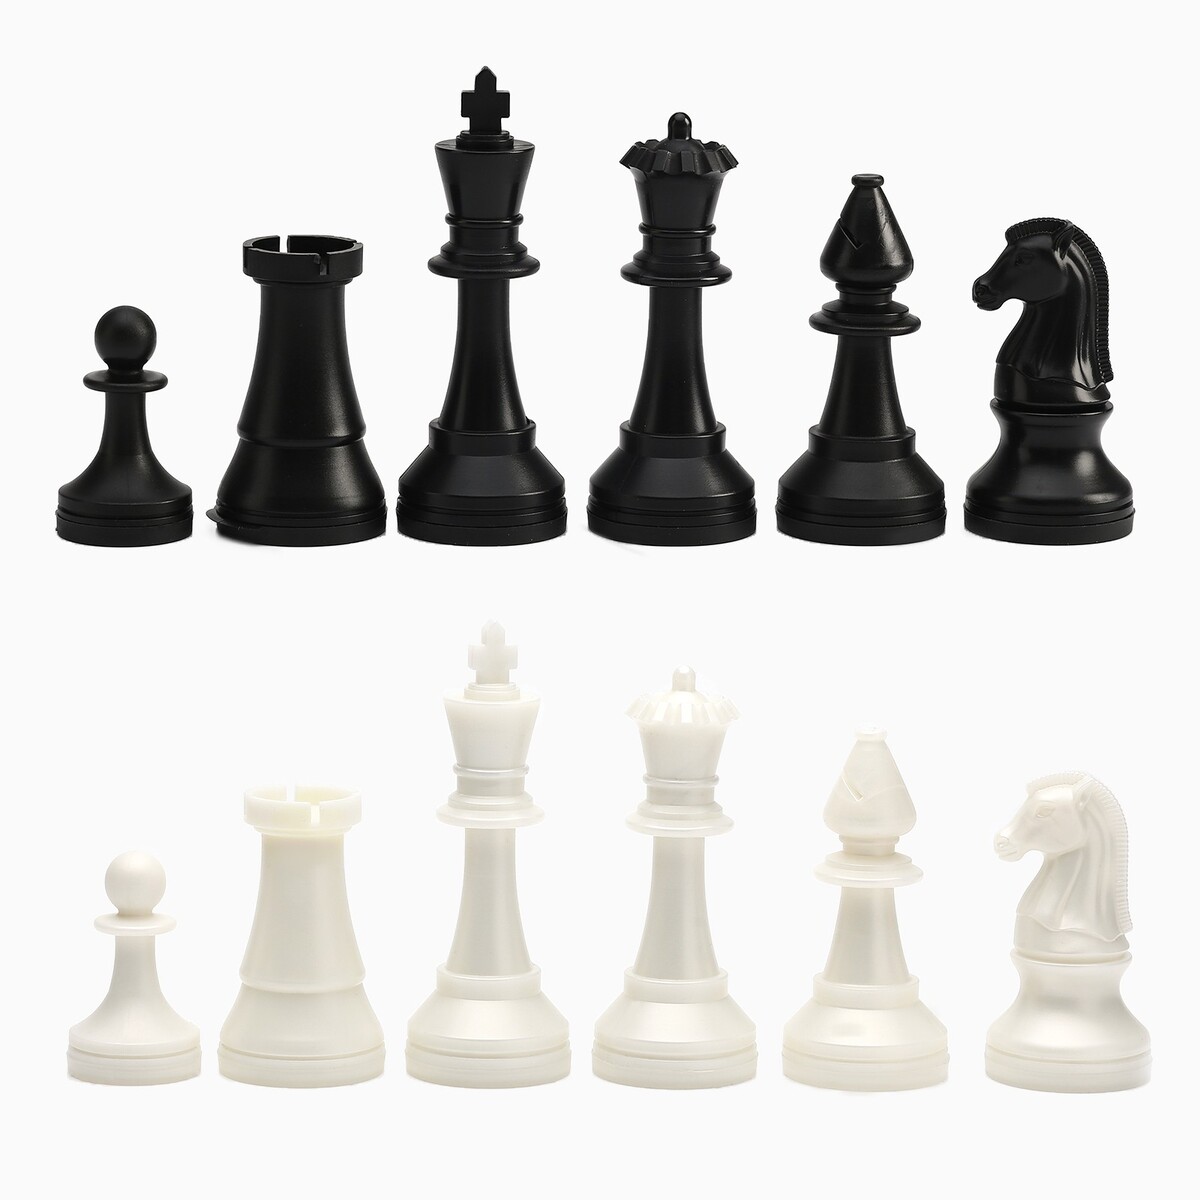 Шахматные фигуры турнирные, пластик, король h-10.5 см, пешка h-5 см шахматные фигуры гроссмейстерские